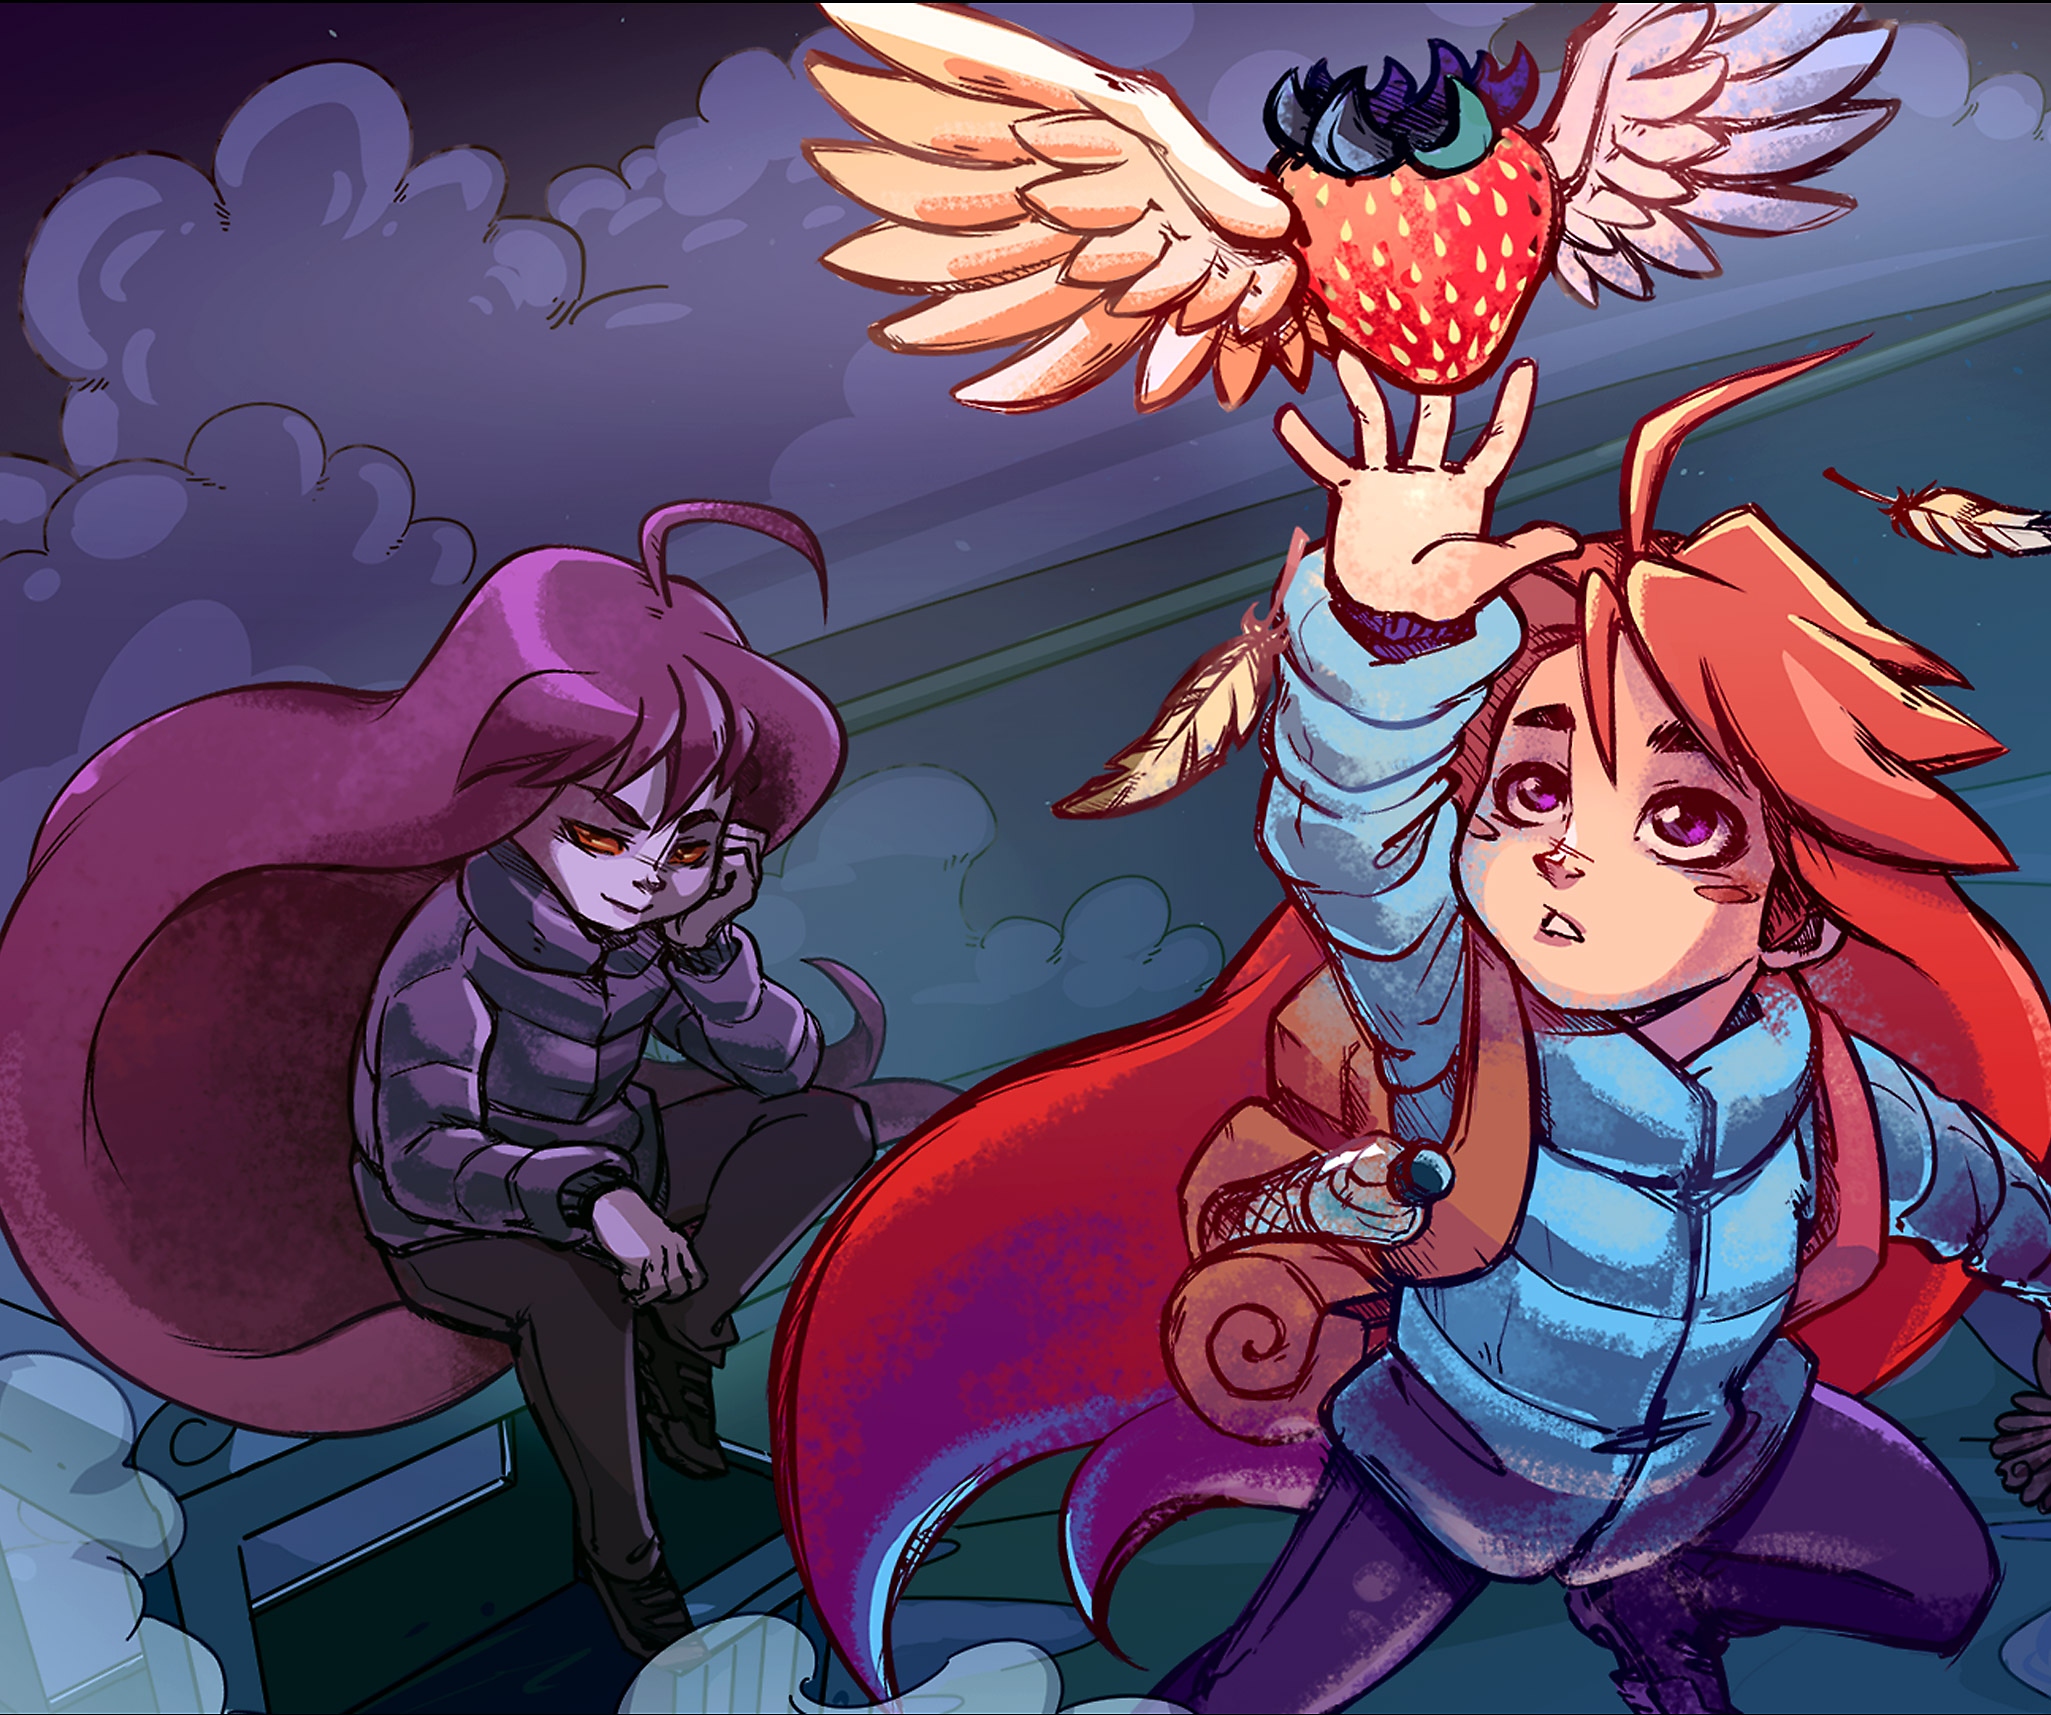 Image de Celeste - dessin du personnage principal, Madeleine, essayant d'attraper une fraise volante.